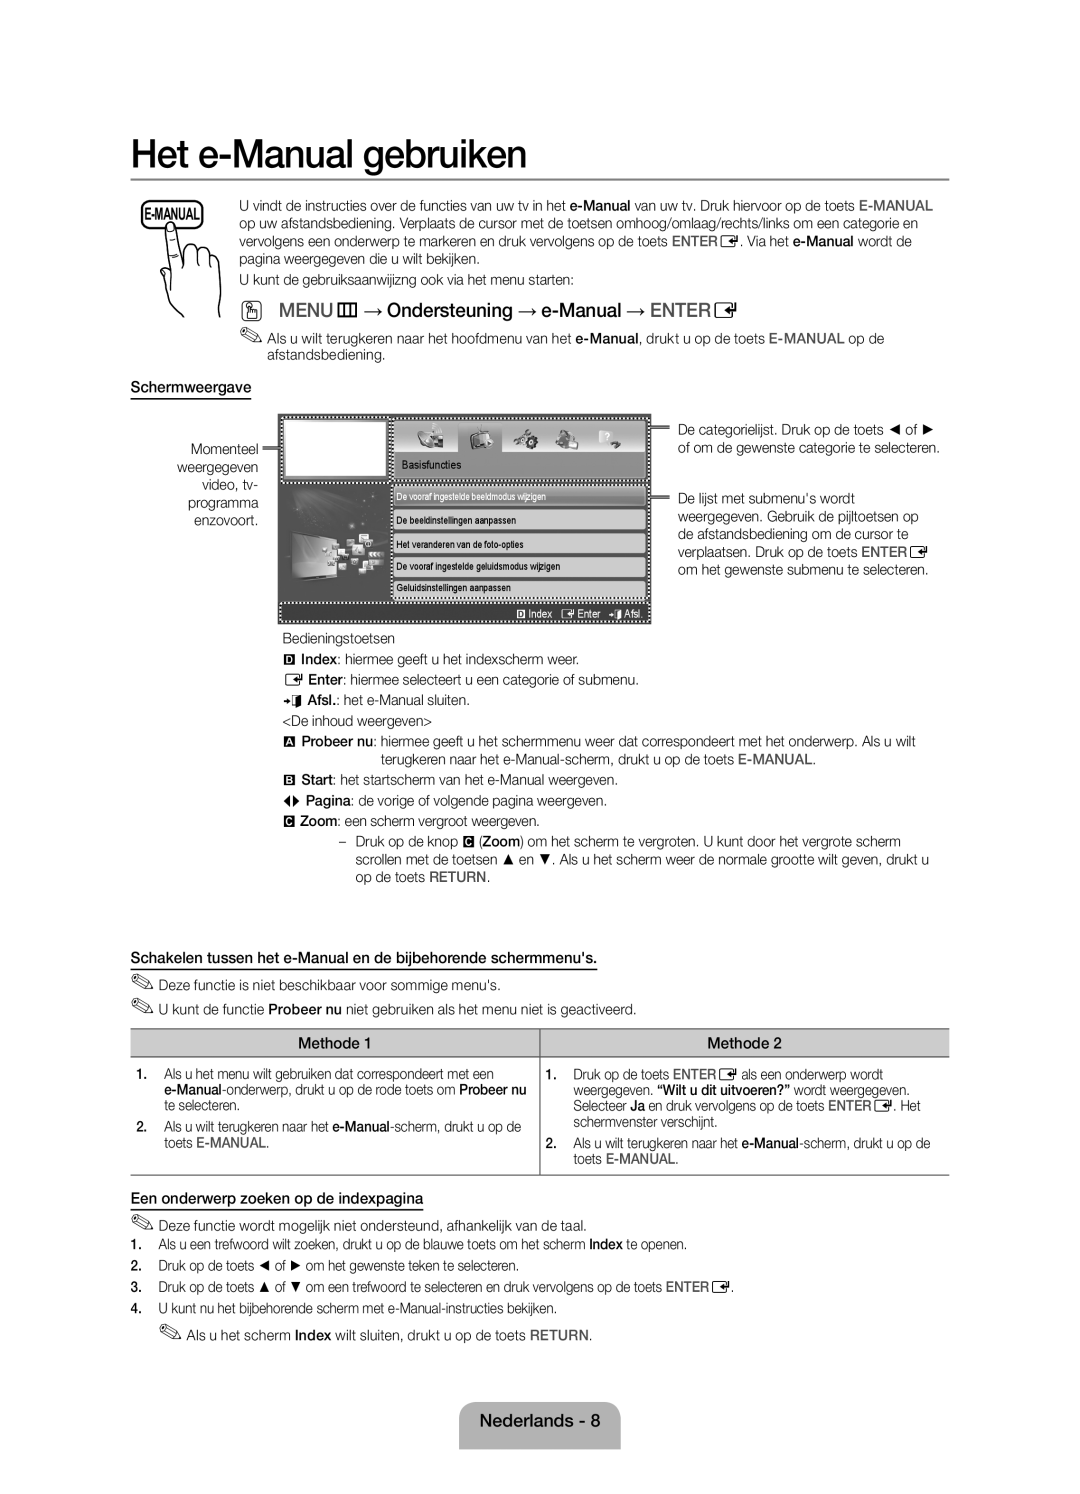 Samsung UE19ES4000WXZF manual Schermweergave, Een onderwerp zoeken op de indexpagina 